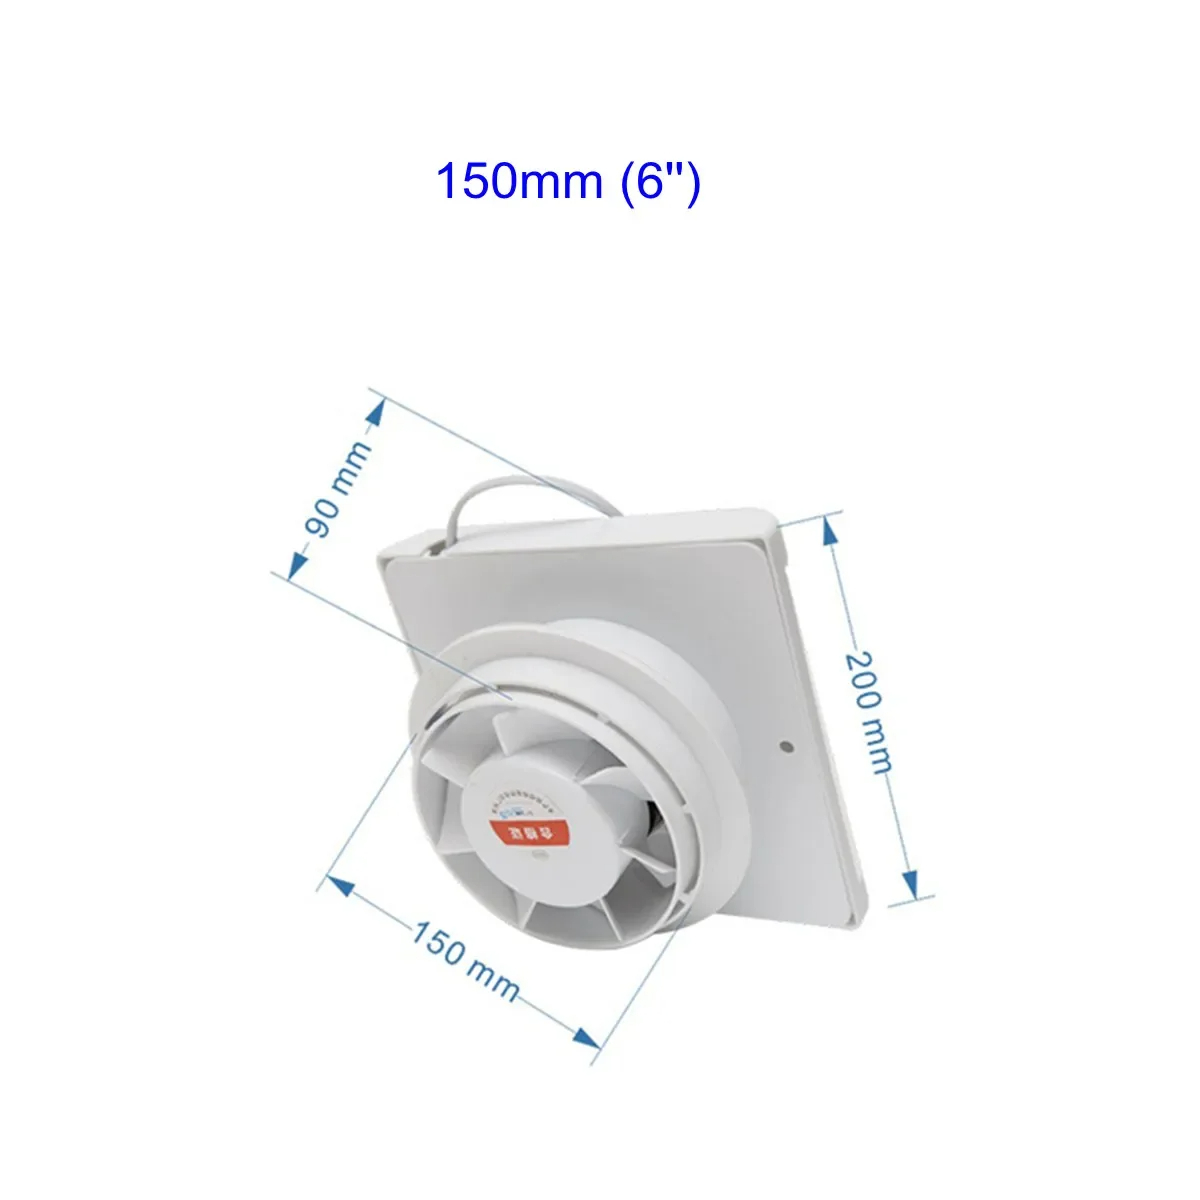 6 inch 220V Waterproof Mute Powerful Window Fan3